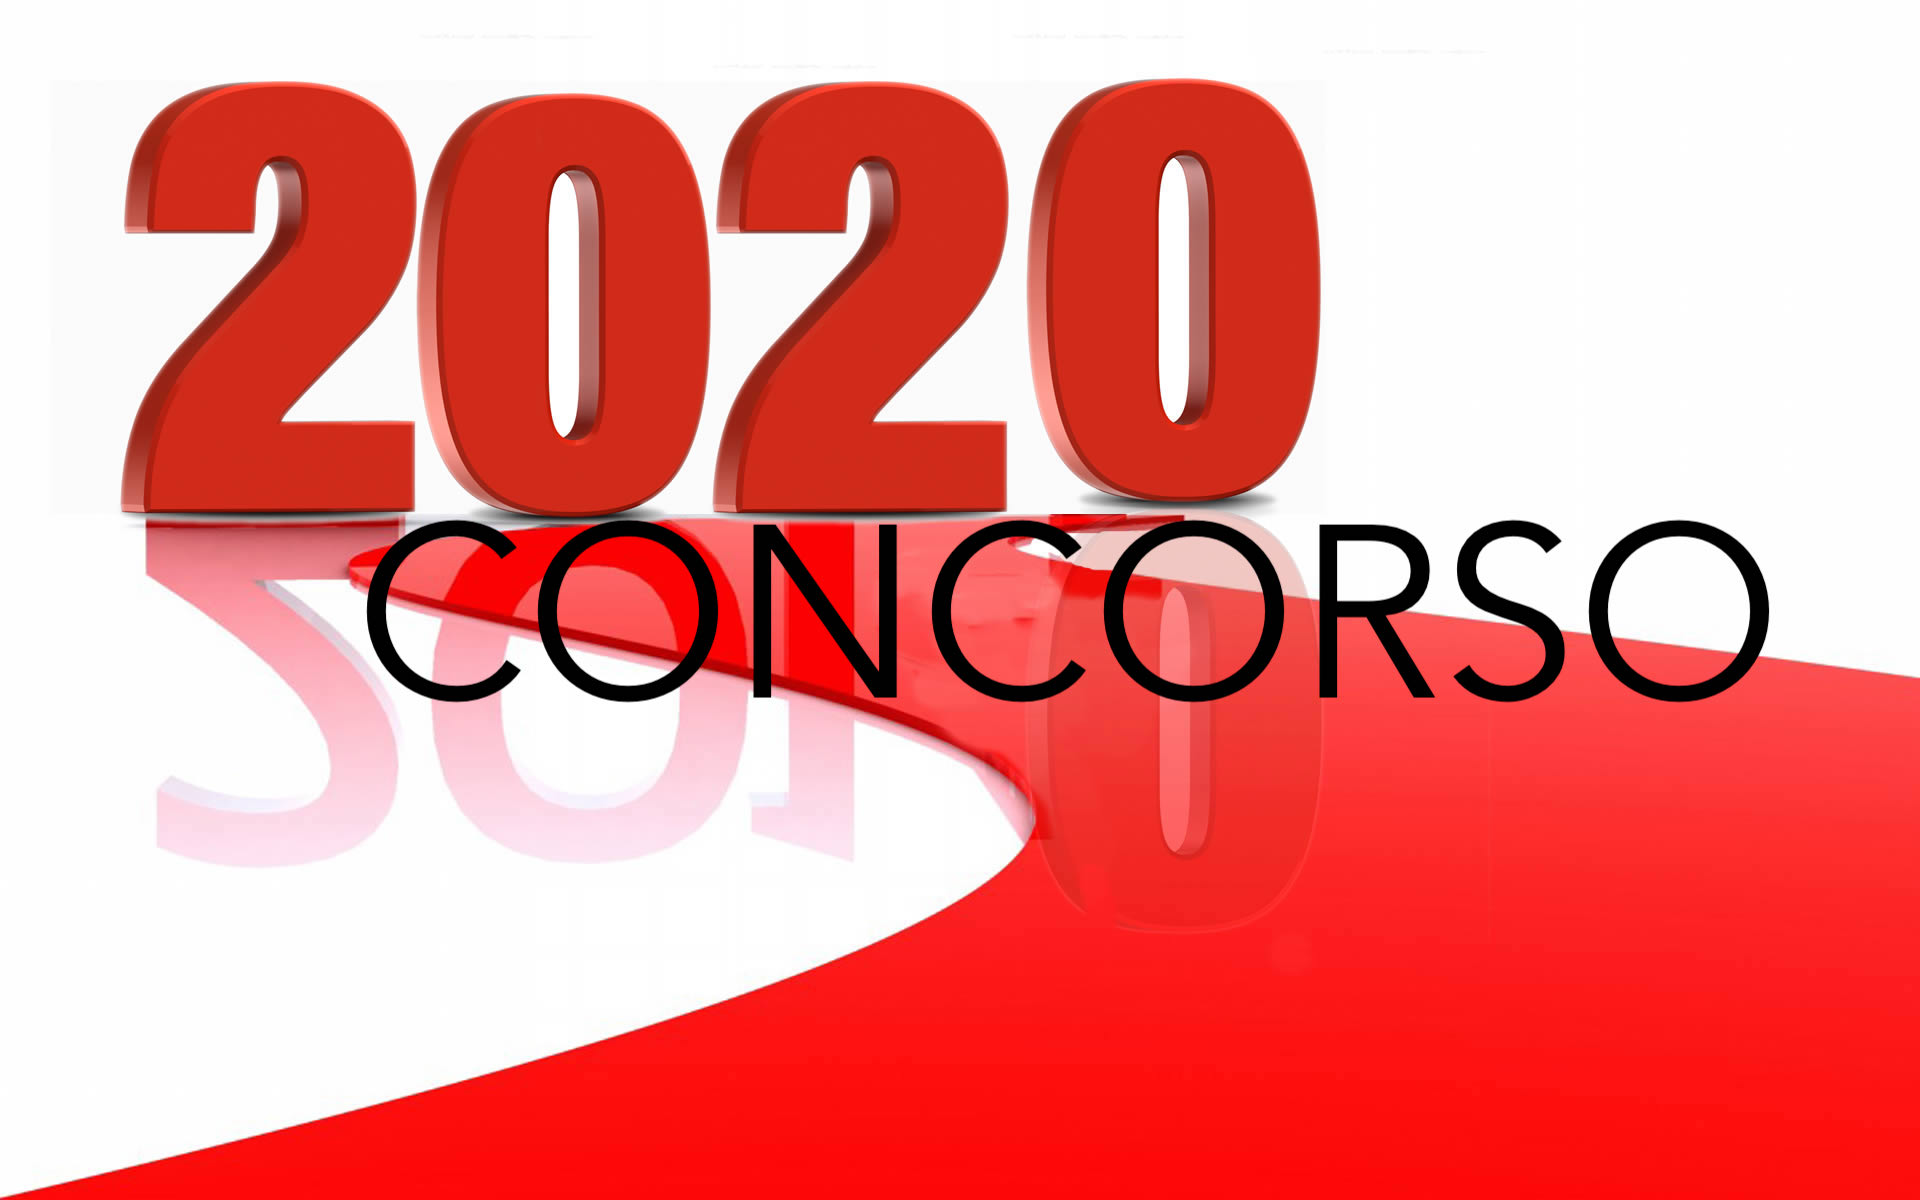 concorso-anno-2020-rosso1